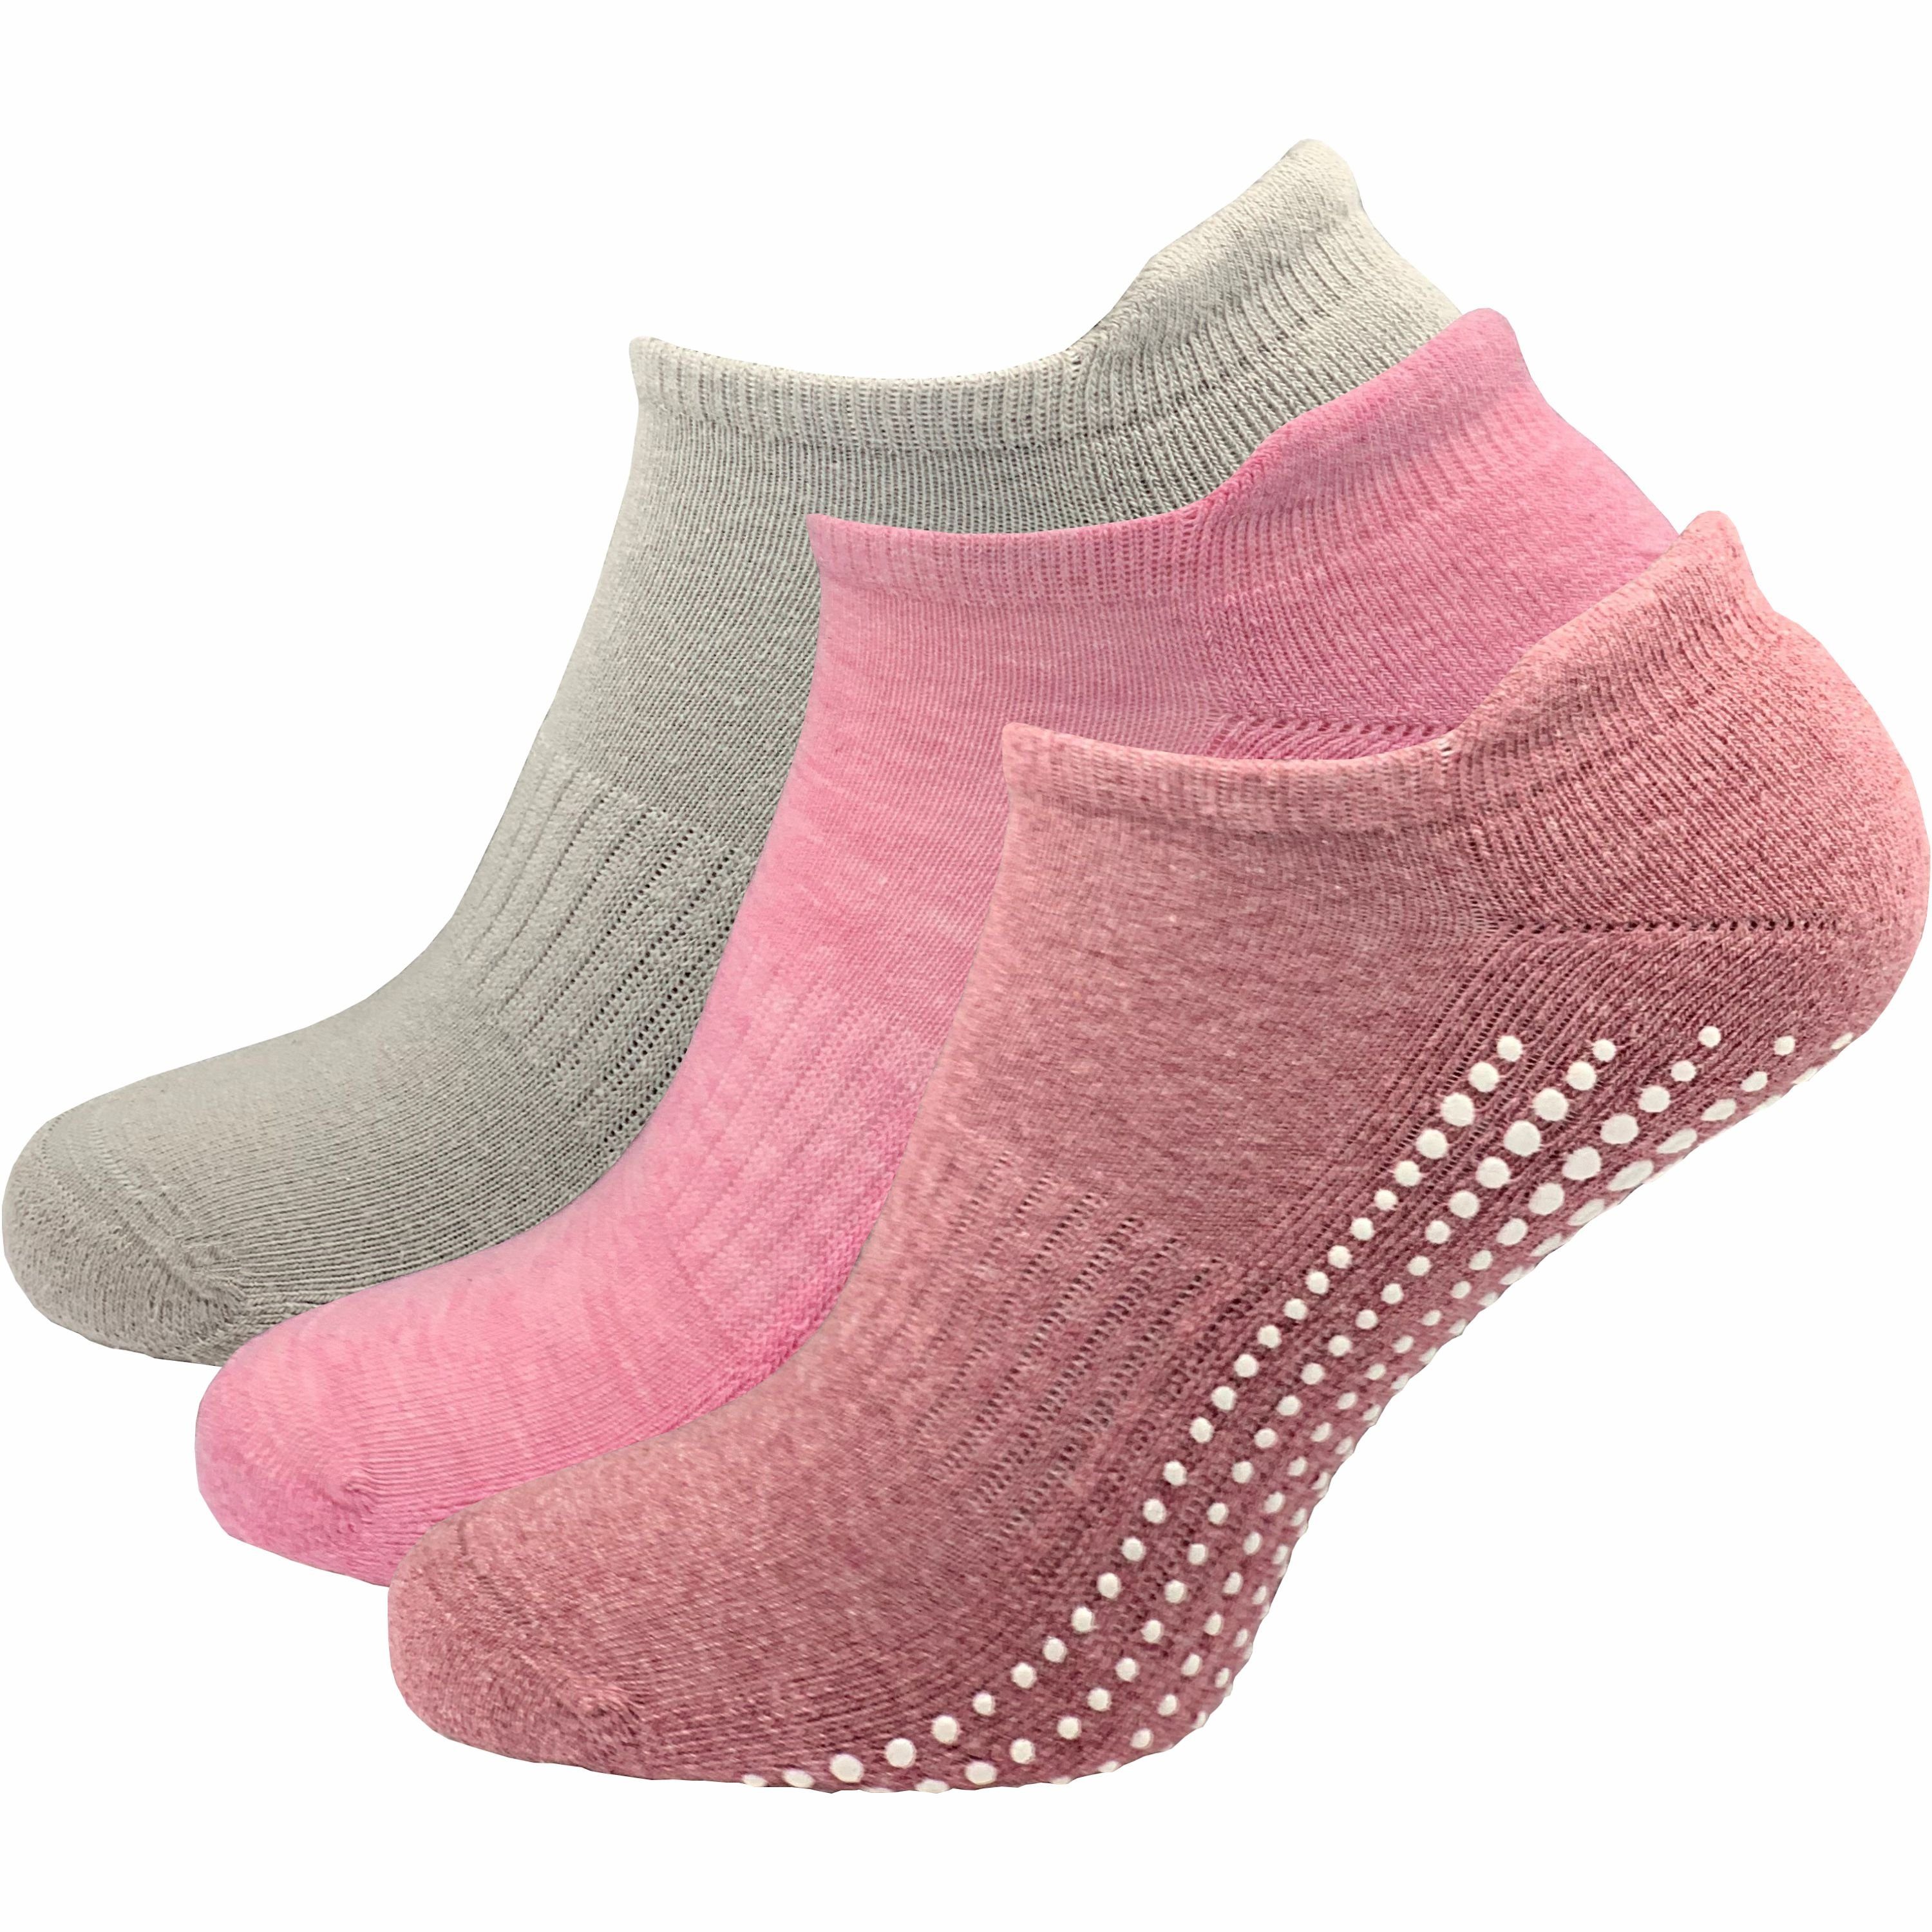 GAWILO ABS-Socken für Damen - Yoga & Pilates Socken - sicherer Halt auf glatten Böden (3 Paar) - rutschfest - mit hohem Baumwollanteil farbig 1